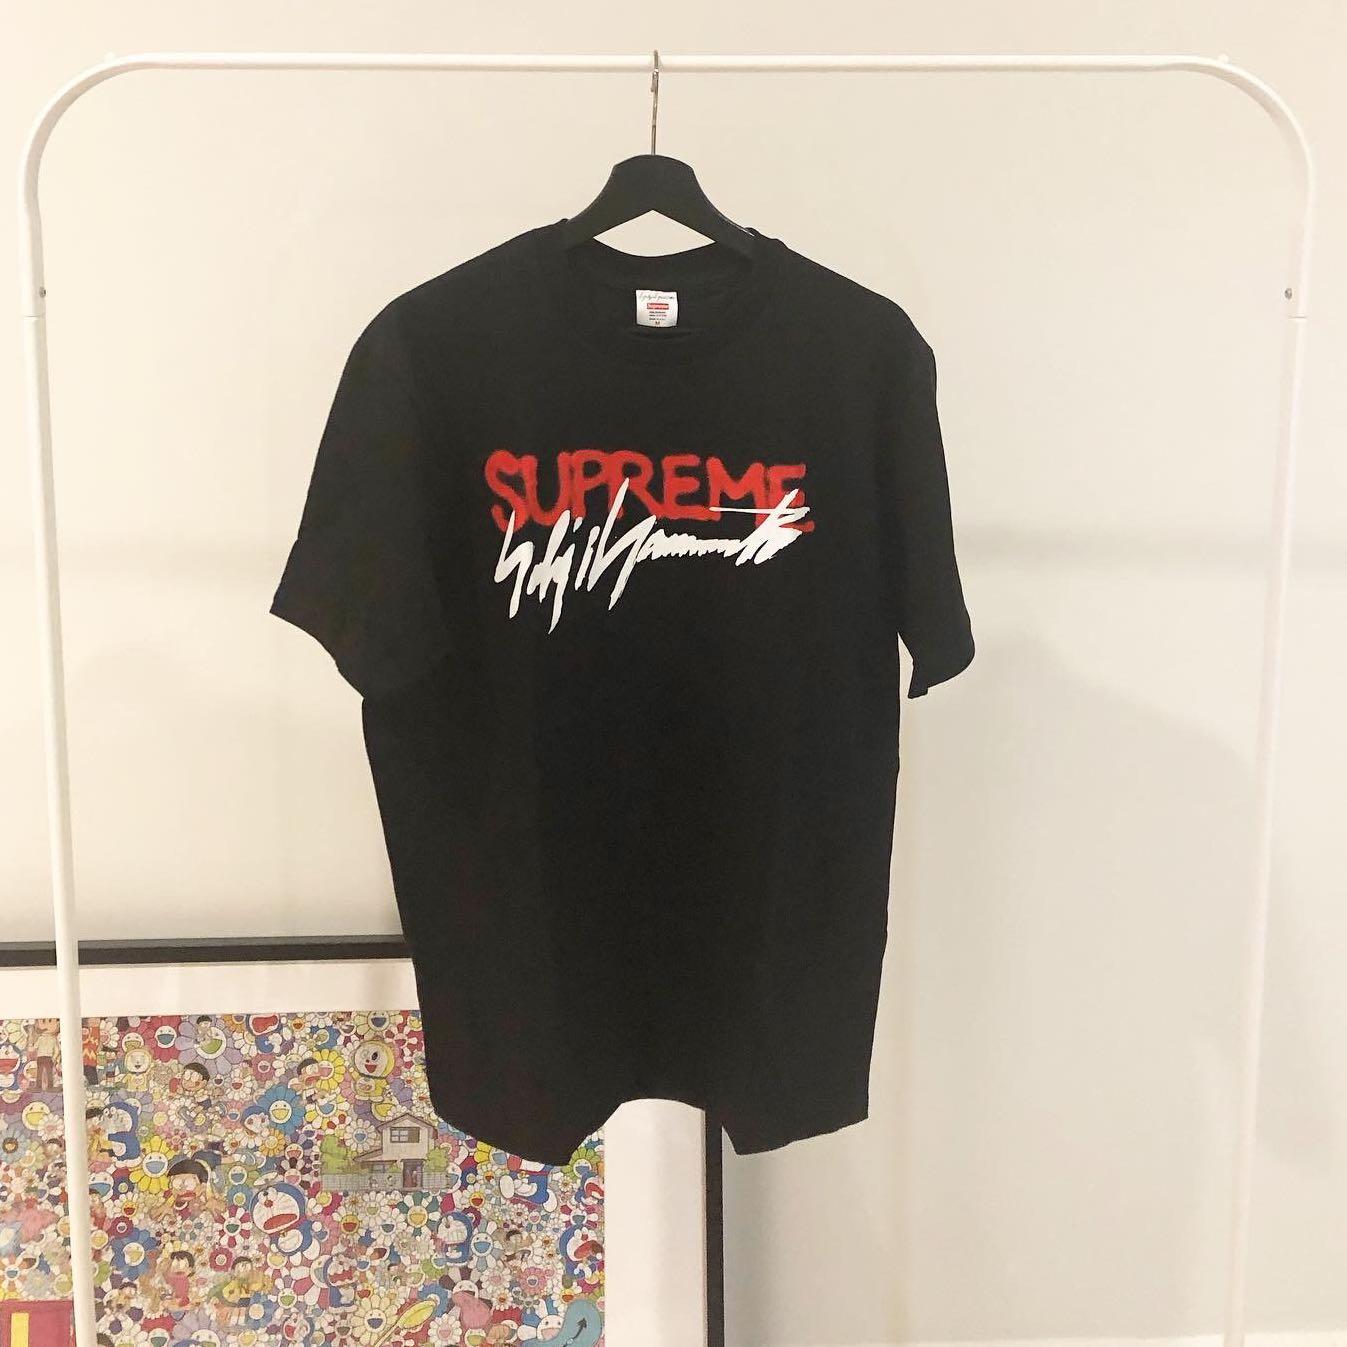 メンズXLサイズ Supreme Yohji Yamamoto logo tee - Tシャツ ...